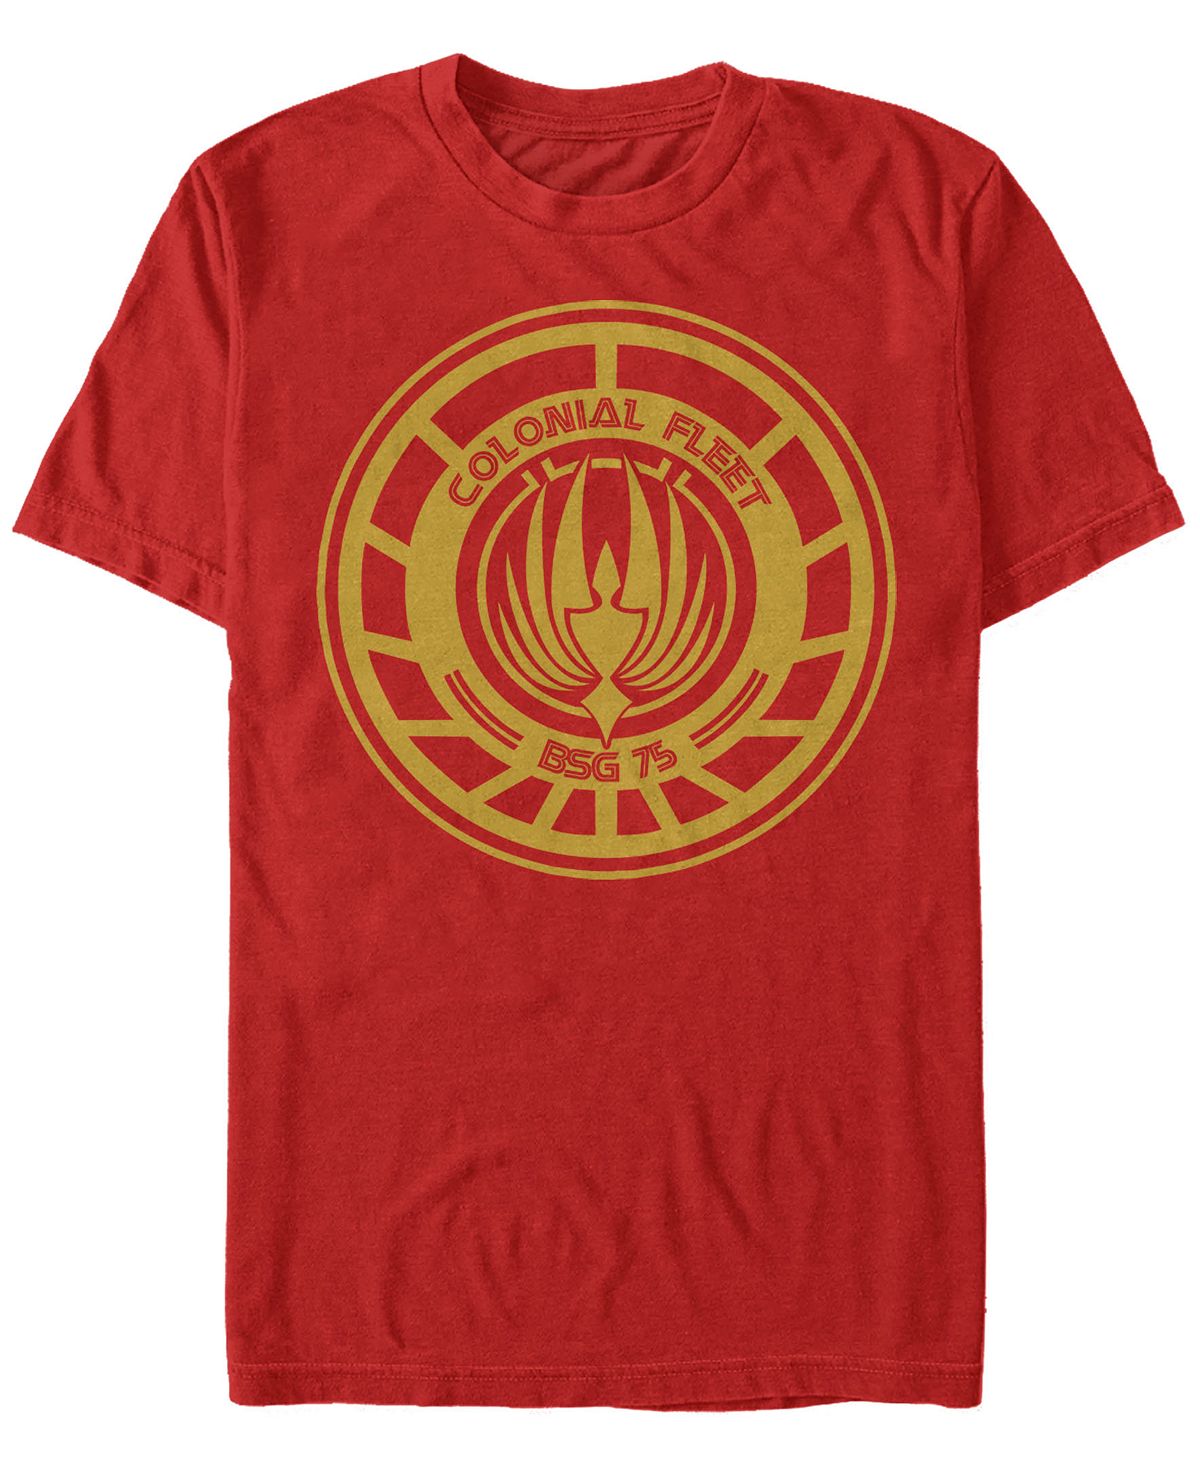 Мужская футболка с коротким рукавом с эмблемой колониального флота battlestar galactica Fifth Sun, красный